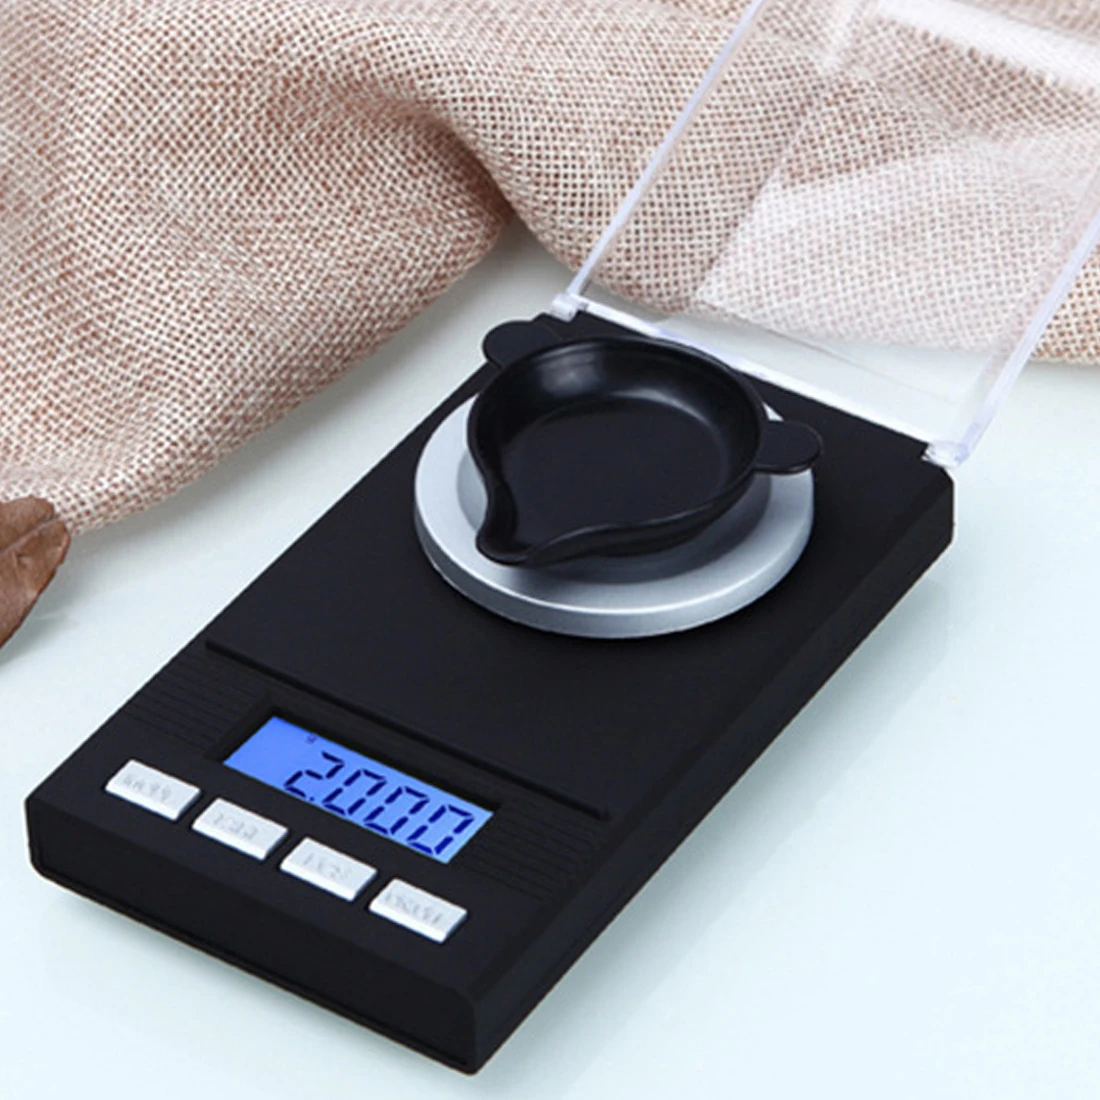 20/50/100g/0,001g ЖК-дисплей цифровые ювелирные весы лабораторный Вес высокоточные весы лечебное Применение Портативный мини электронные весы